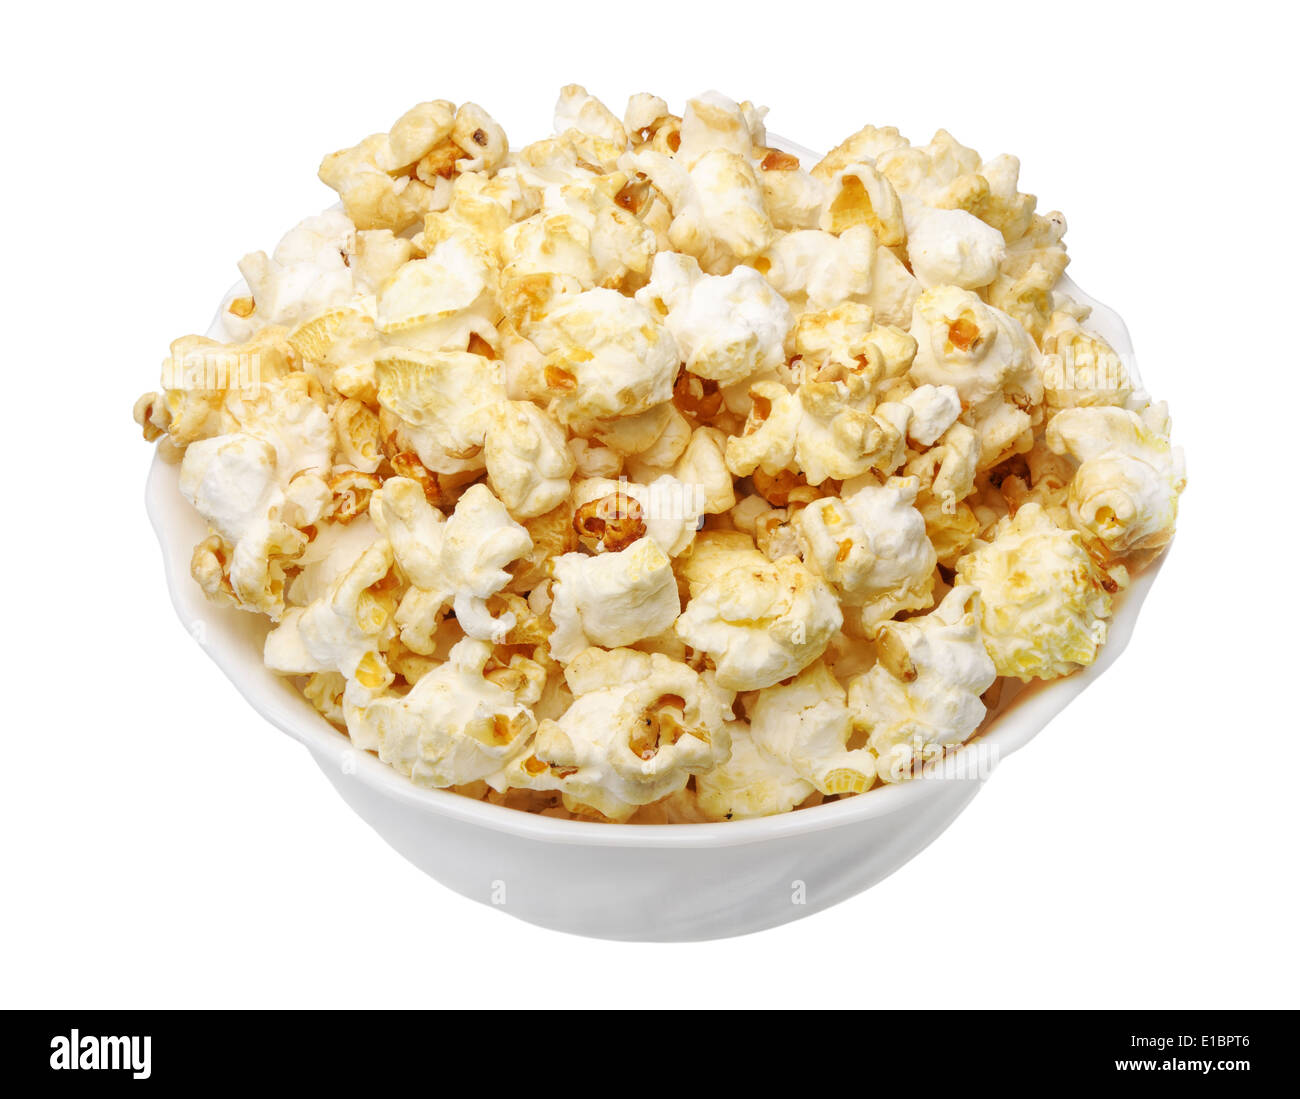 Popcorn dans une tasse blanche sur fond blanc, isolé Banque D'Images